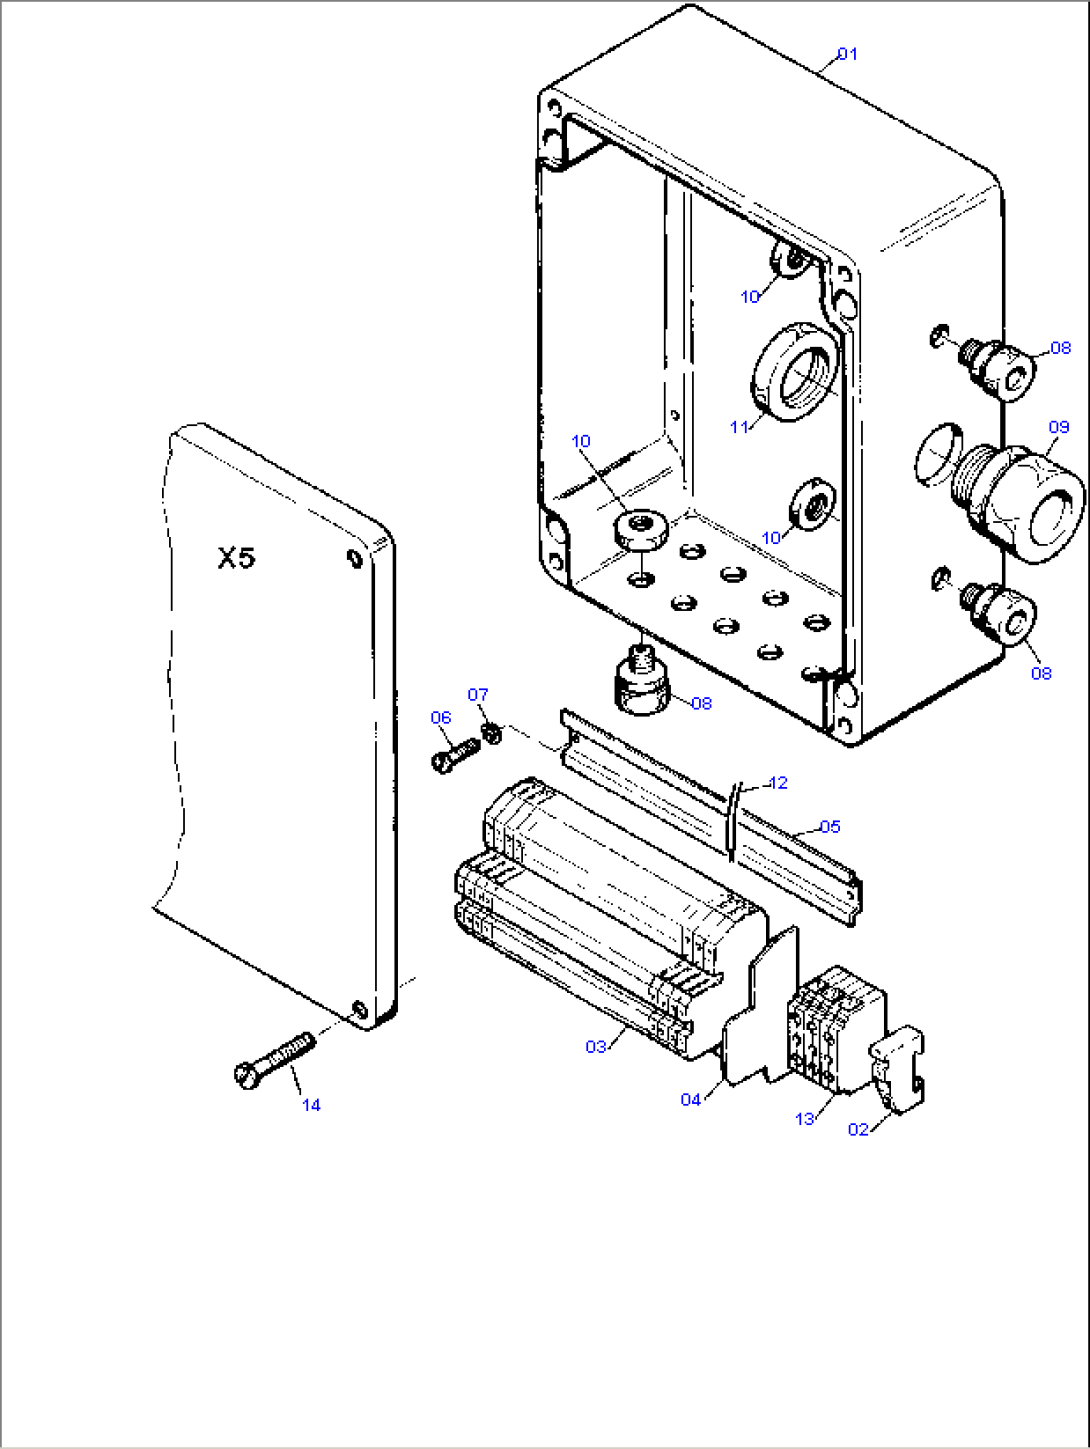 Junction Box (Filter Frame)